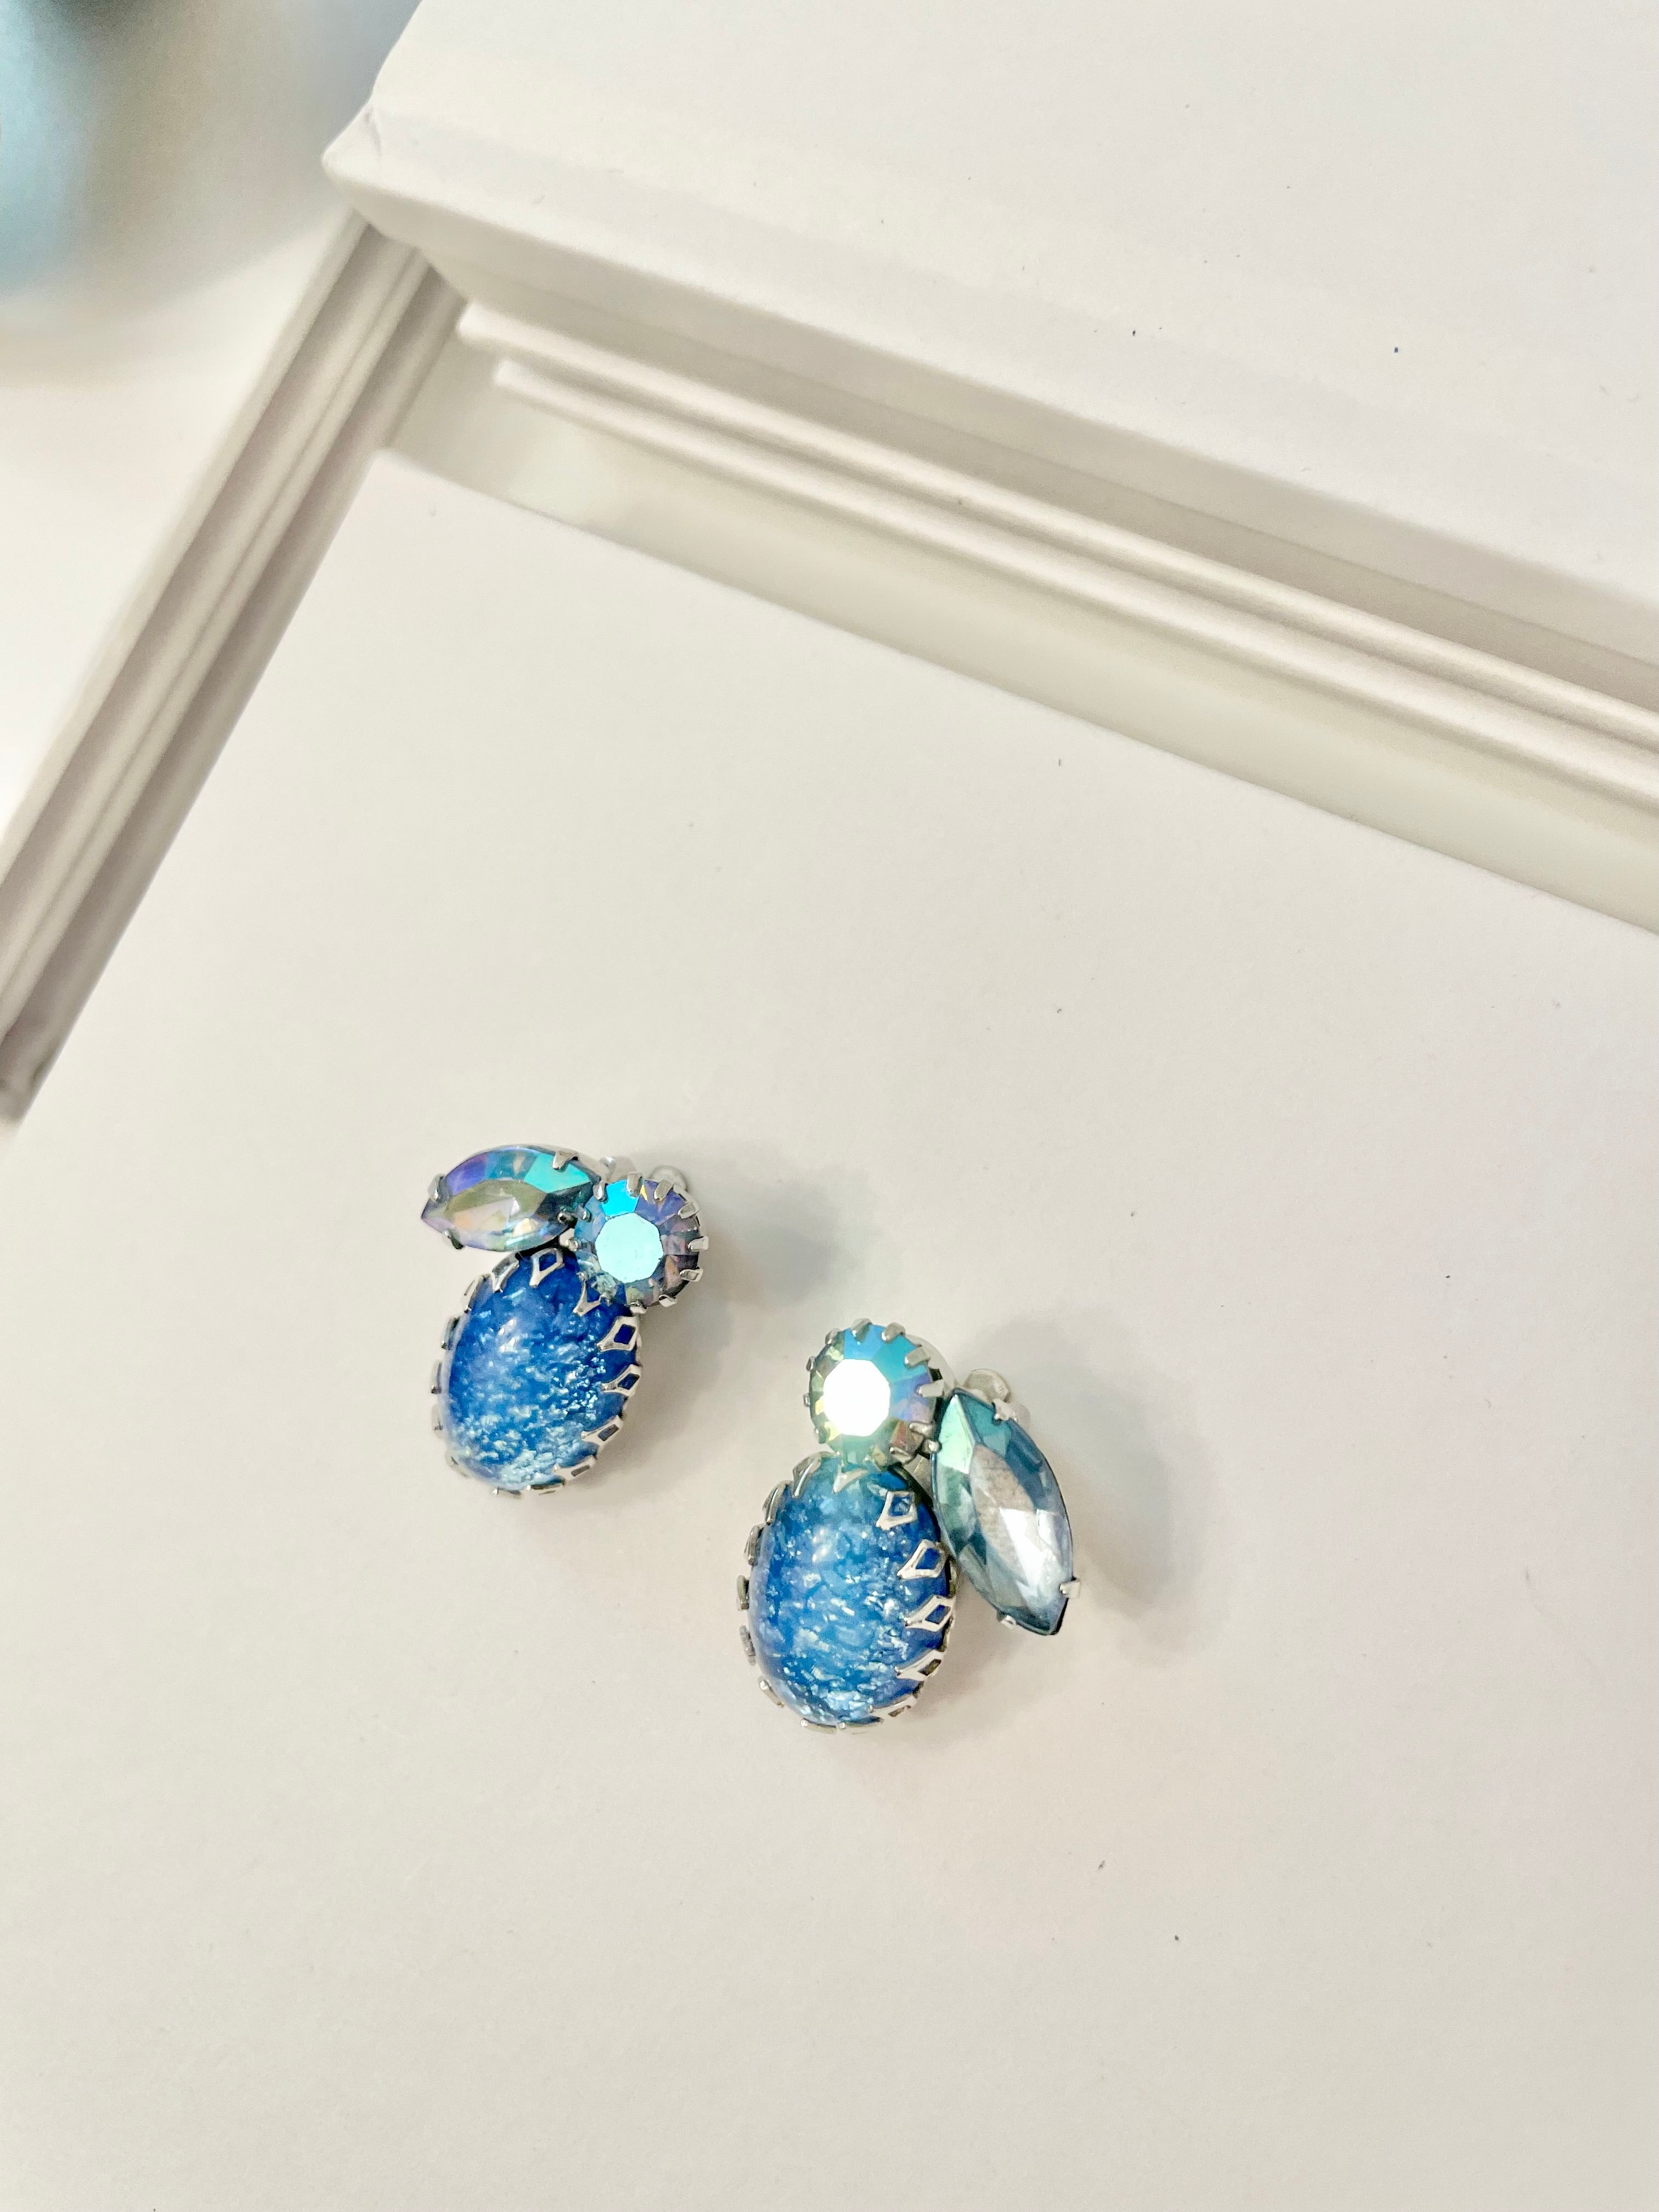 Vintage 1960's Coro blue glass stunning earrings... so elegant